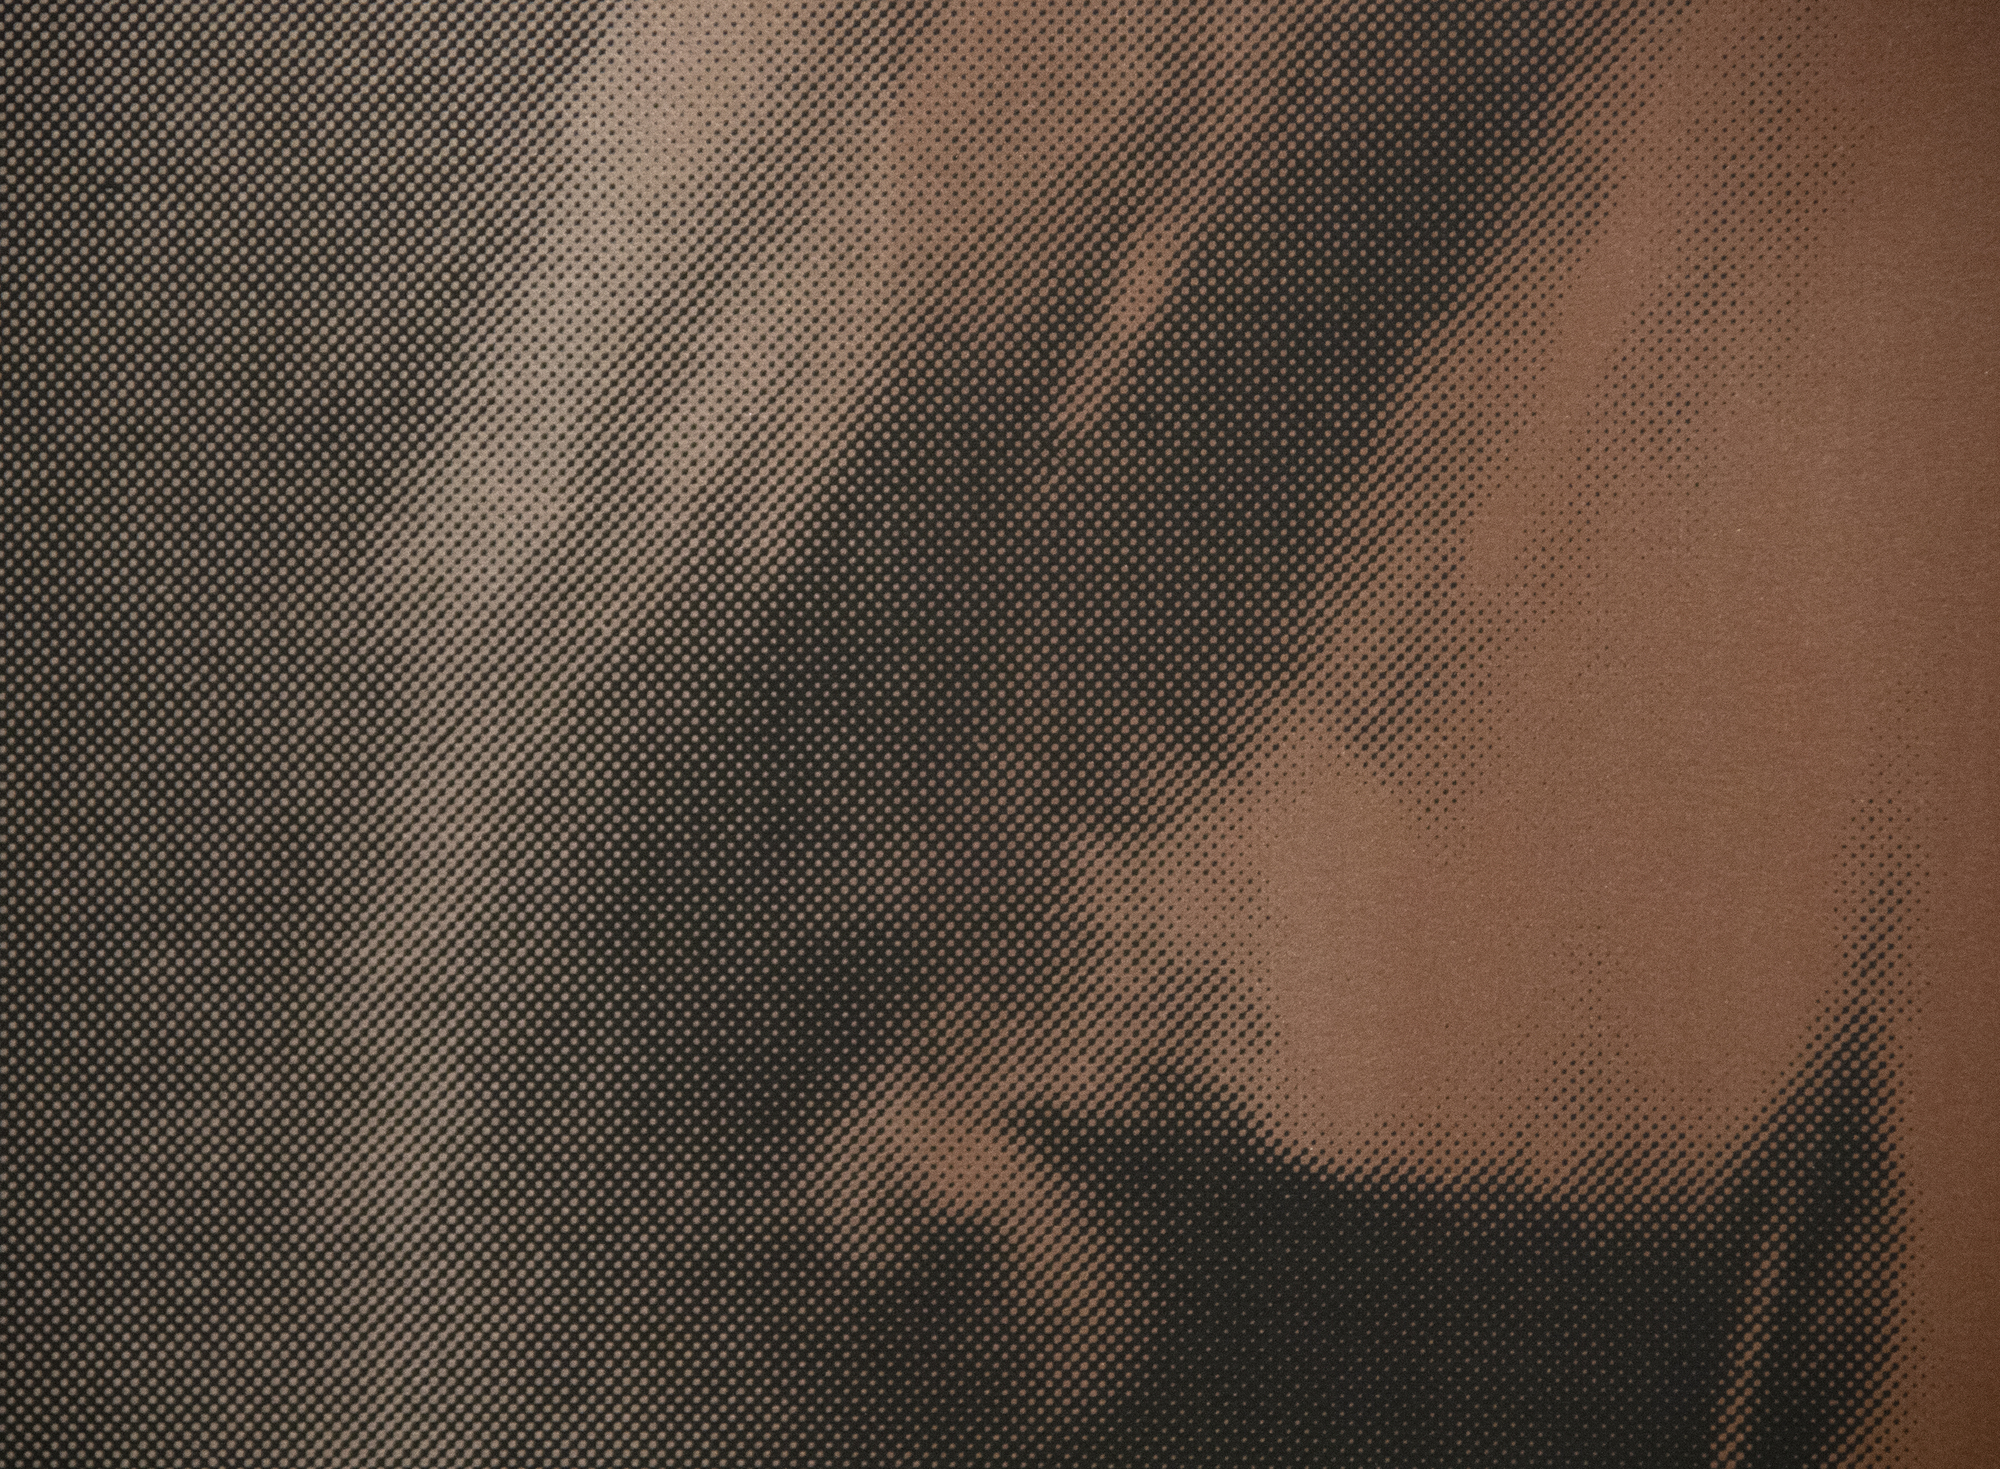 ANDY WARHOL - The Shadow (from Myths) - sérigraphie couleur avec poussière de diamant sur papier - 37 1/2 x 37 1/2 in.